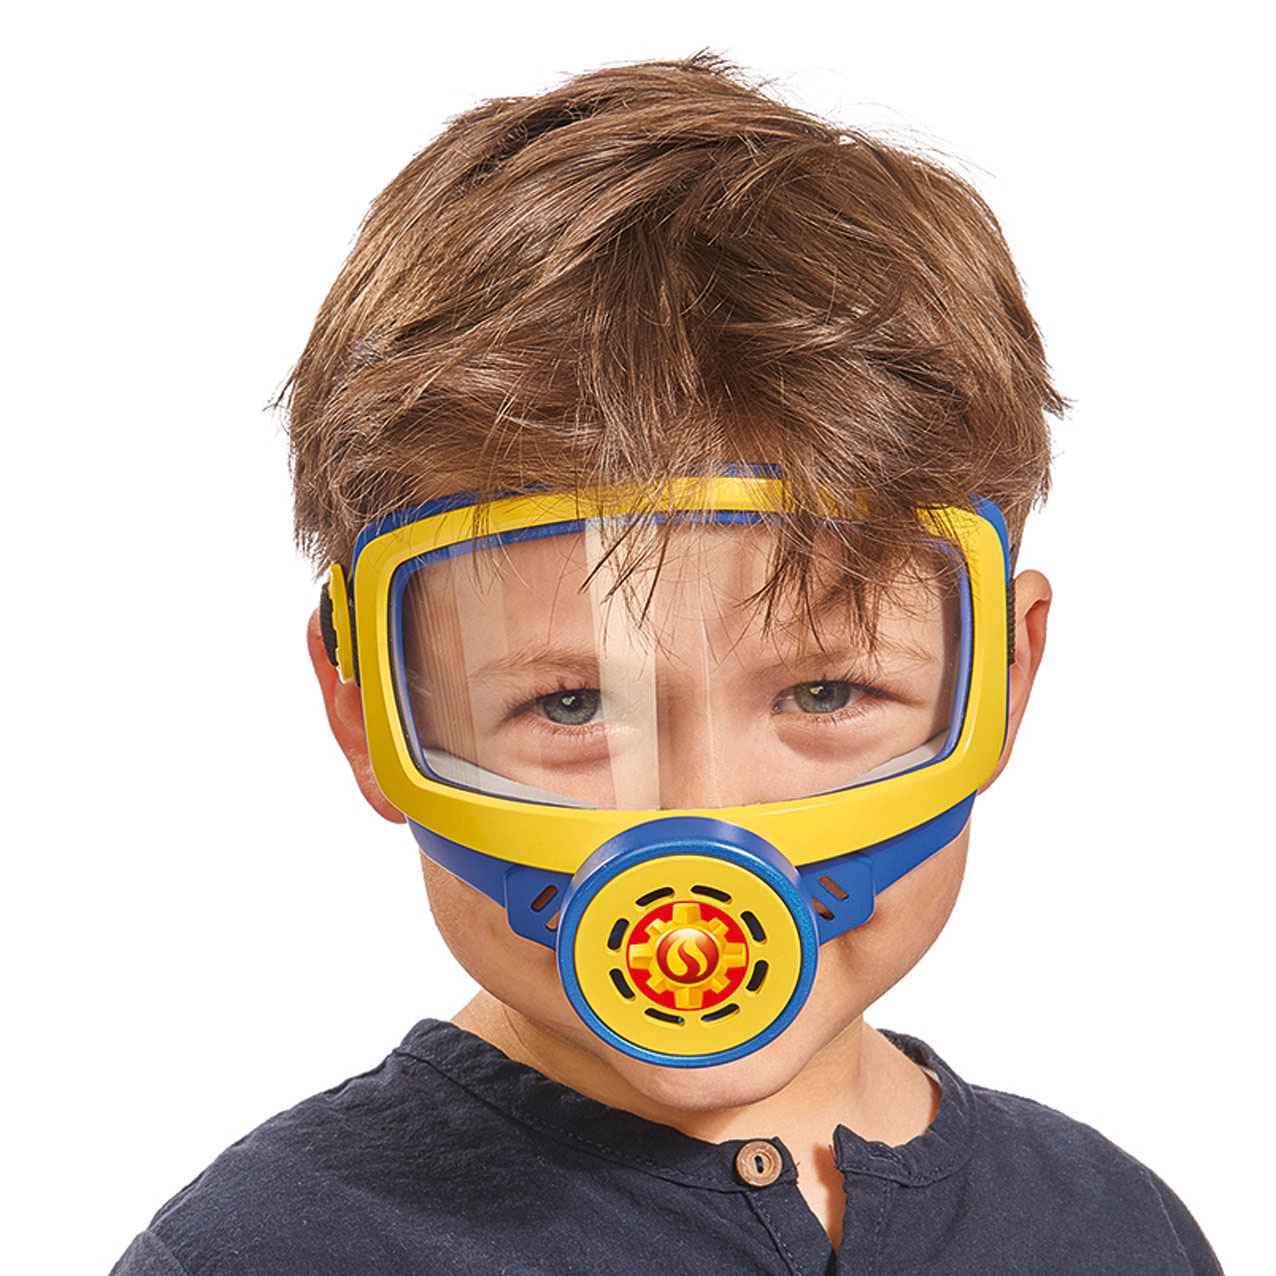 Baby mask. Сэм Oxygen Mask. Детские противогазы. Дети в противогазах. Игрушечный противогаз для детей.